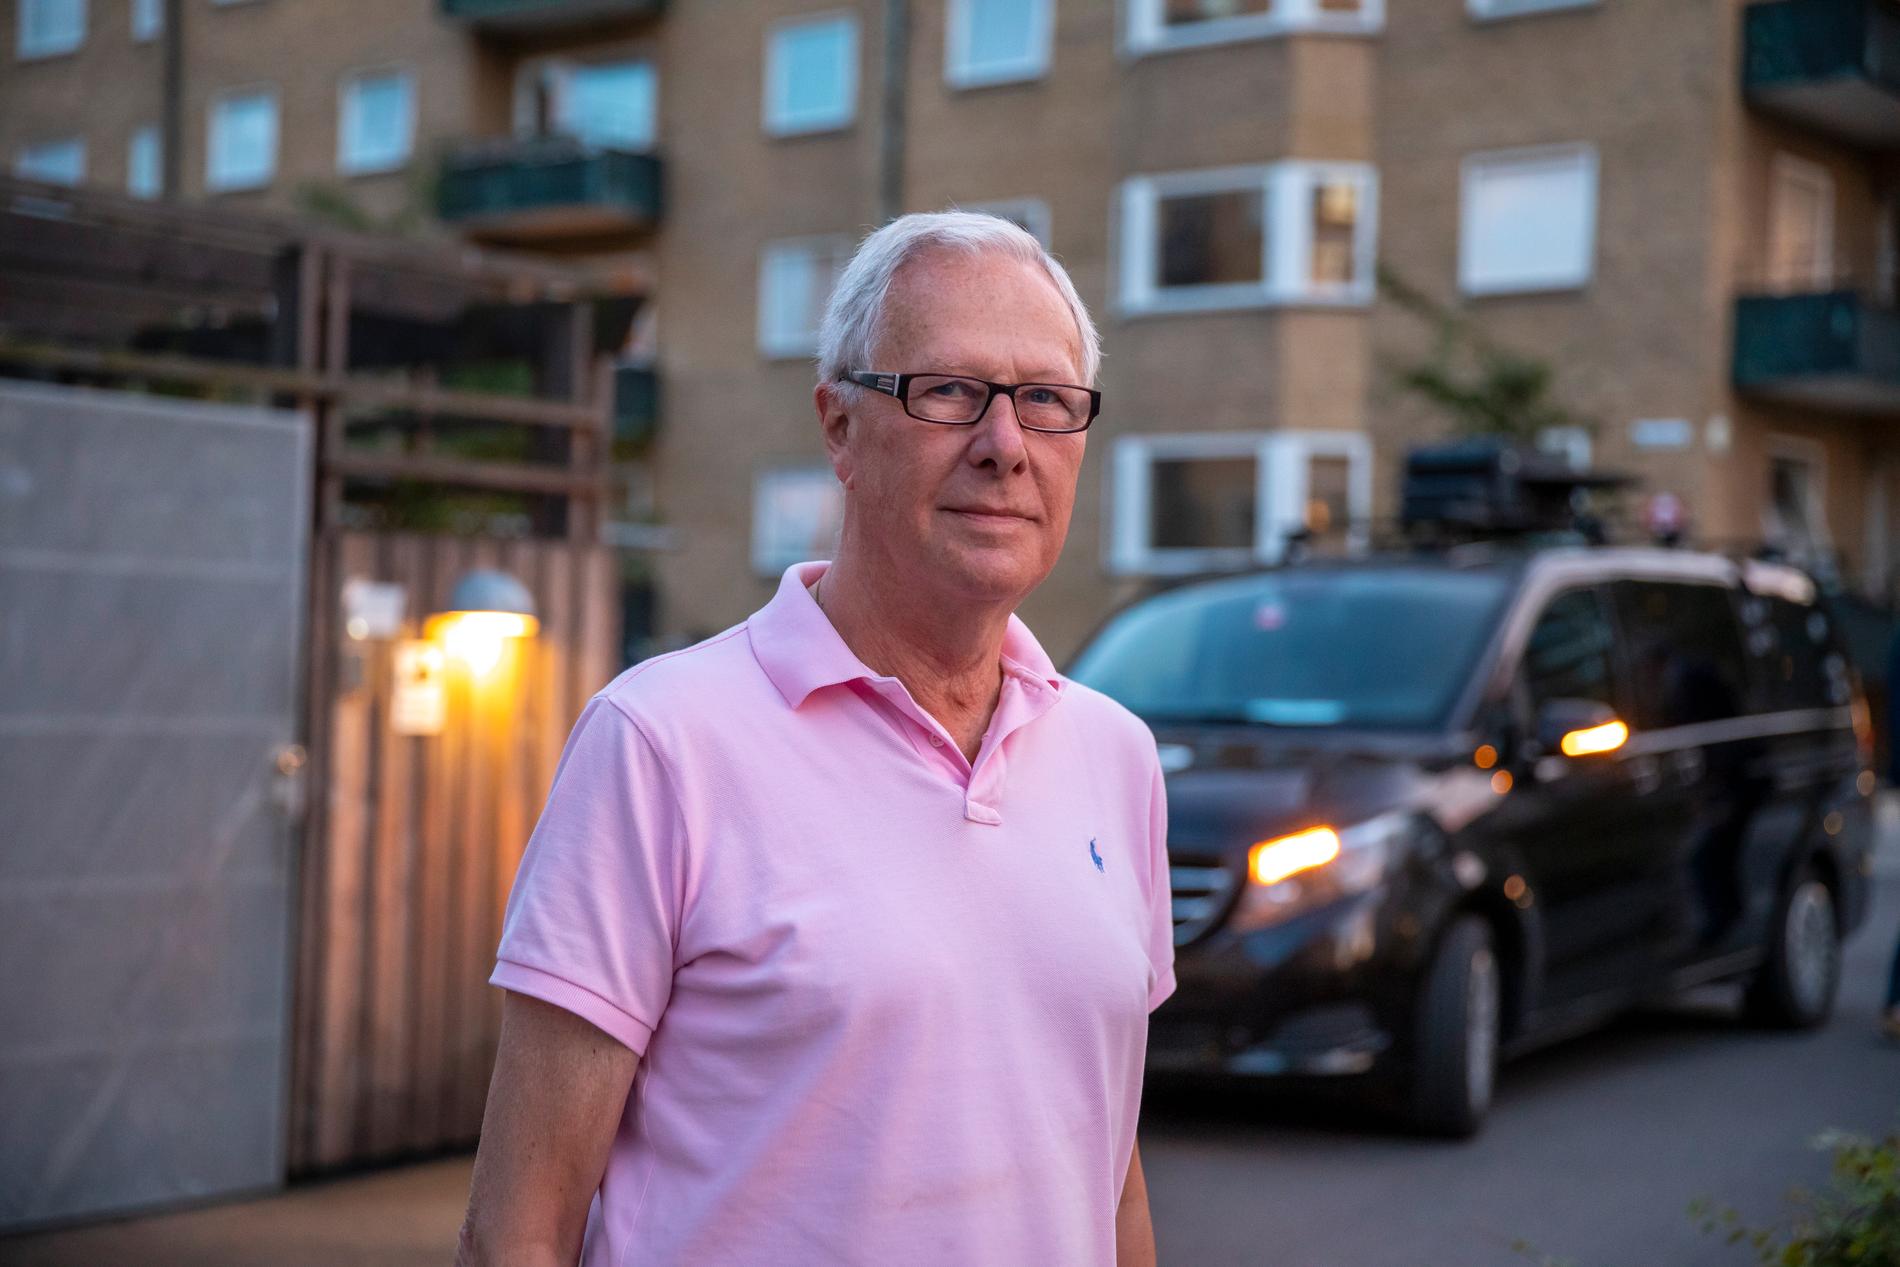 Lars Ahlborn, 77, bor i närheten av brottsplatsen. Han kom cyklande från gymmet strax efter att mordet inträffat. ”Det är fruktansvärt tragiskt”, säger han.